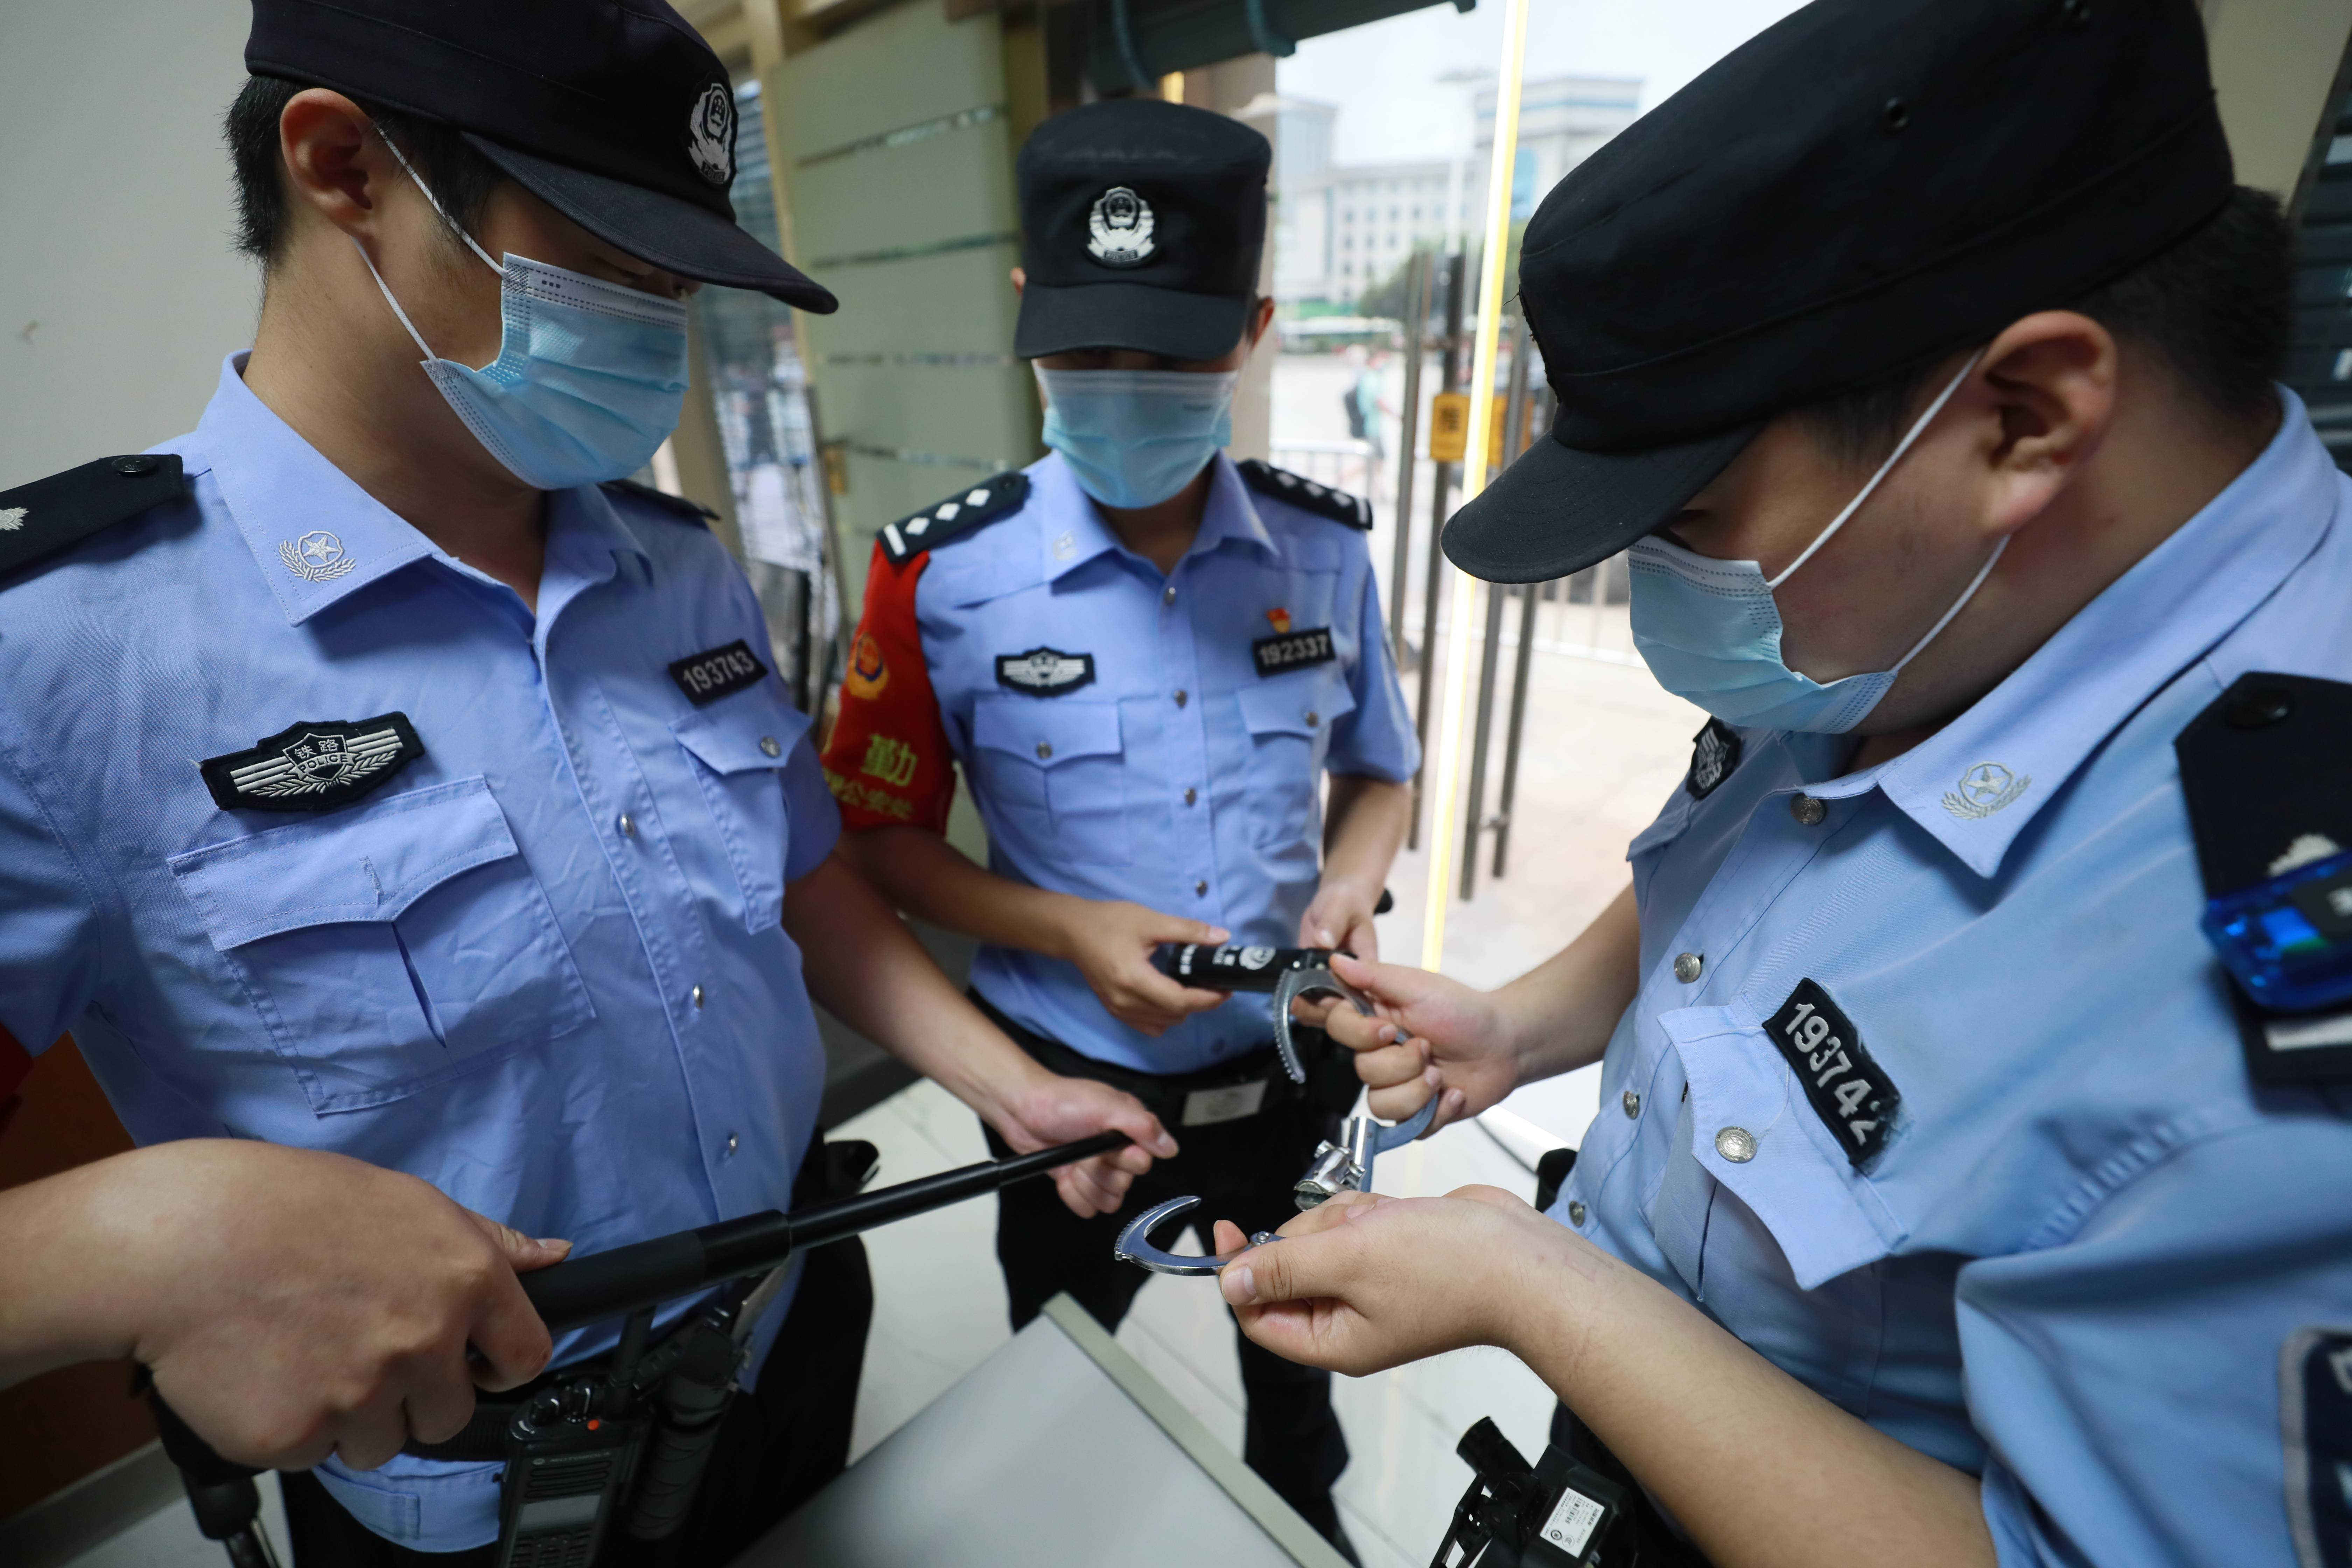 五月初五端午节,湖北武汉铁路民警在工作期间检查警用装备